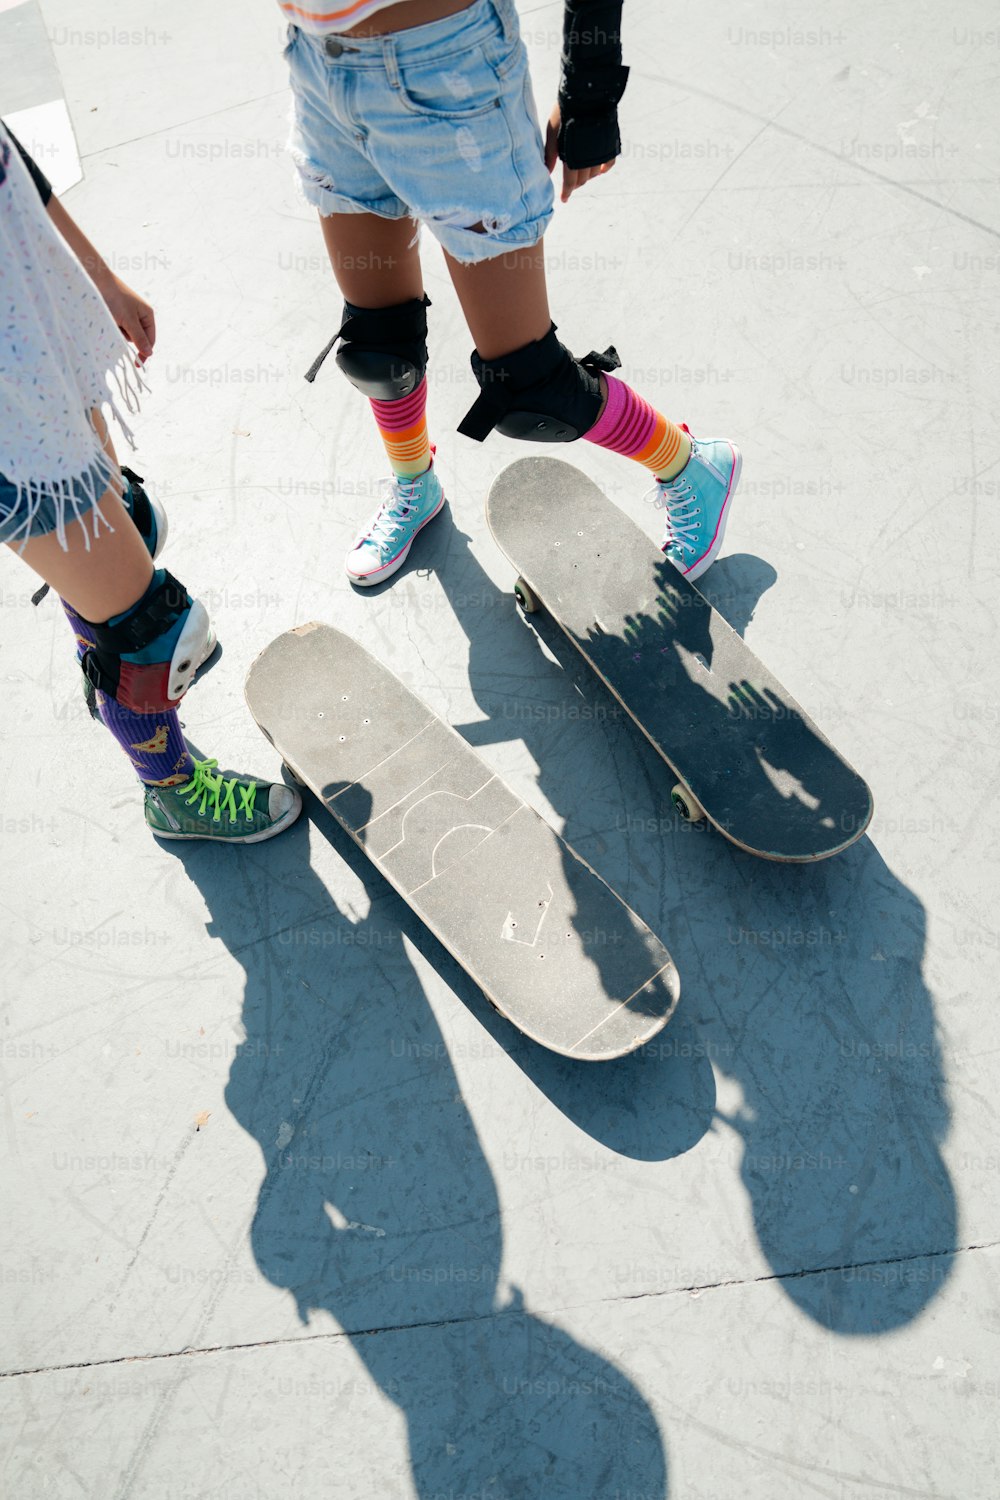 스케이트보드 위에 서 있는 두 사람